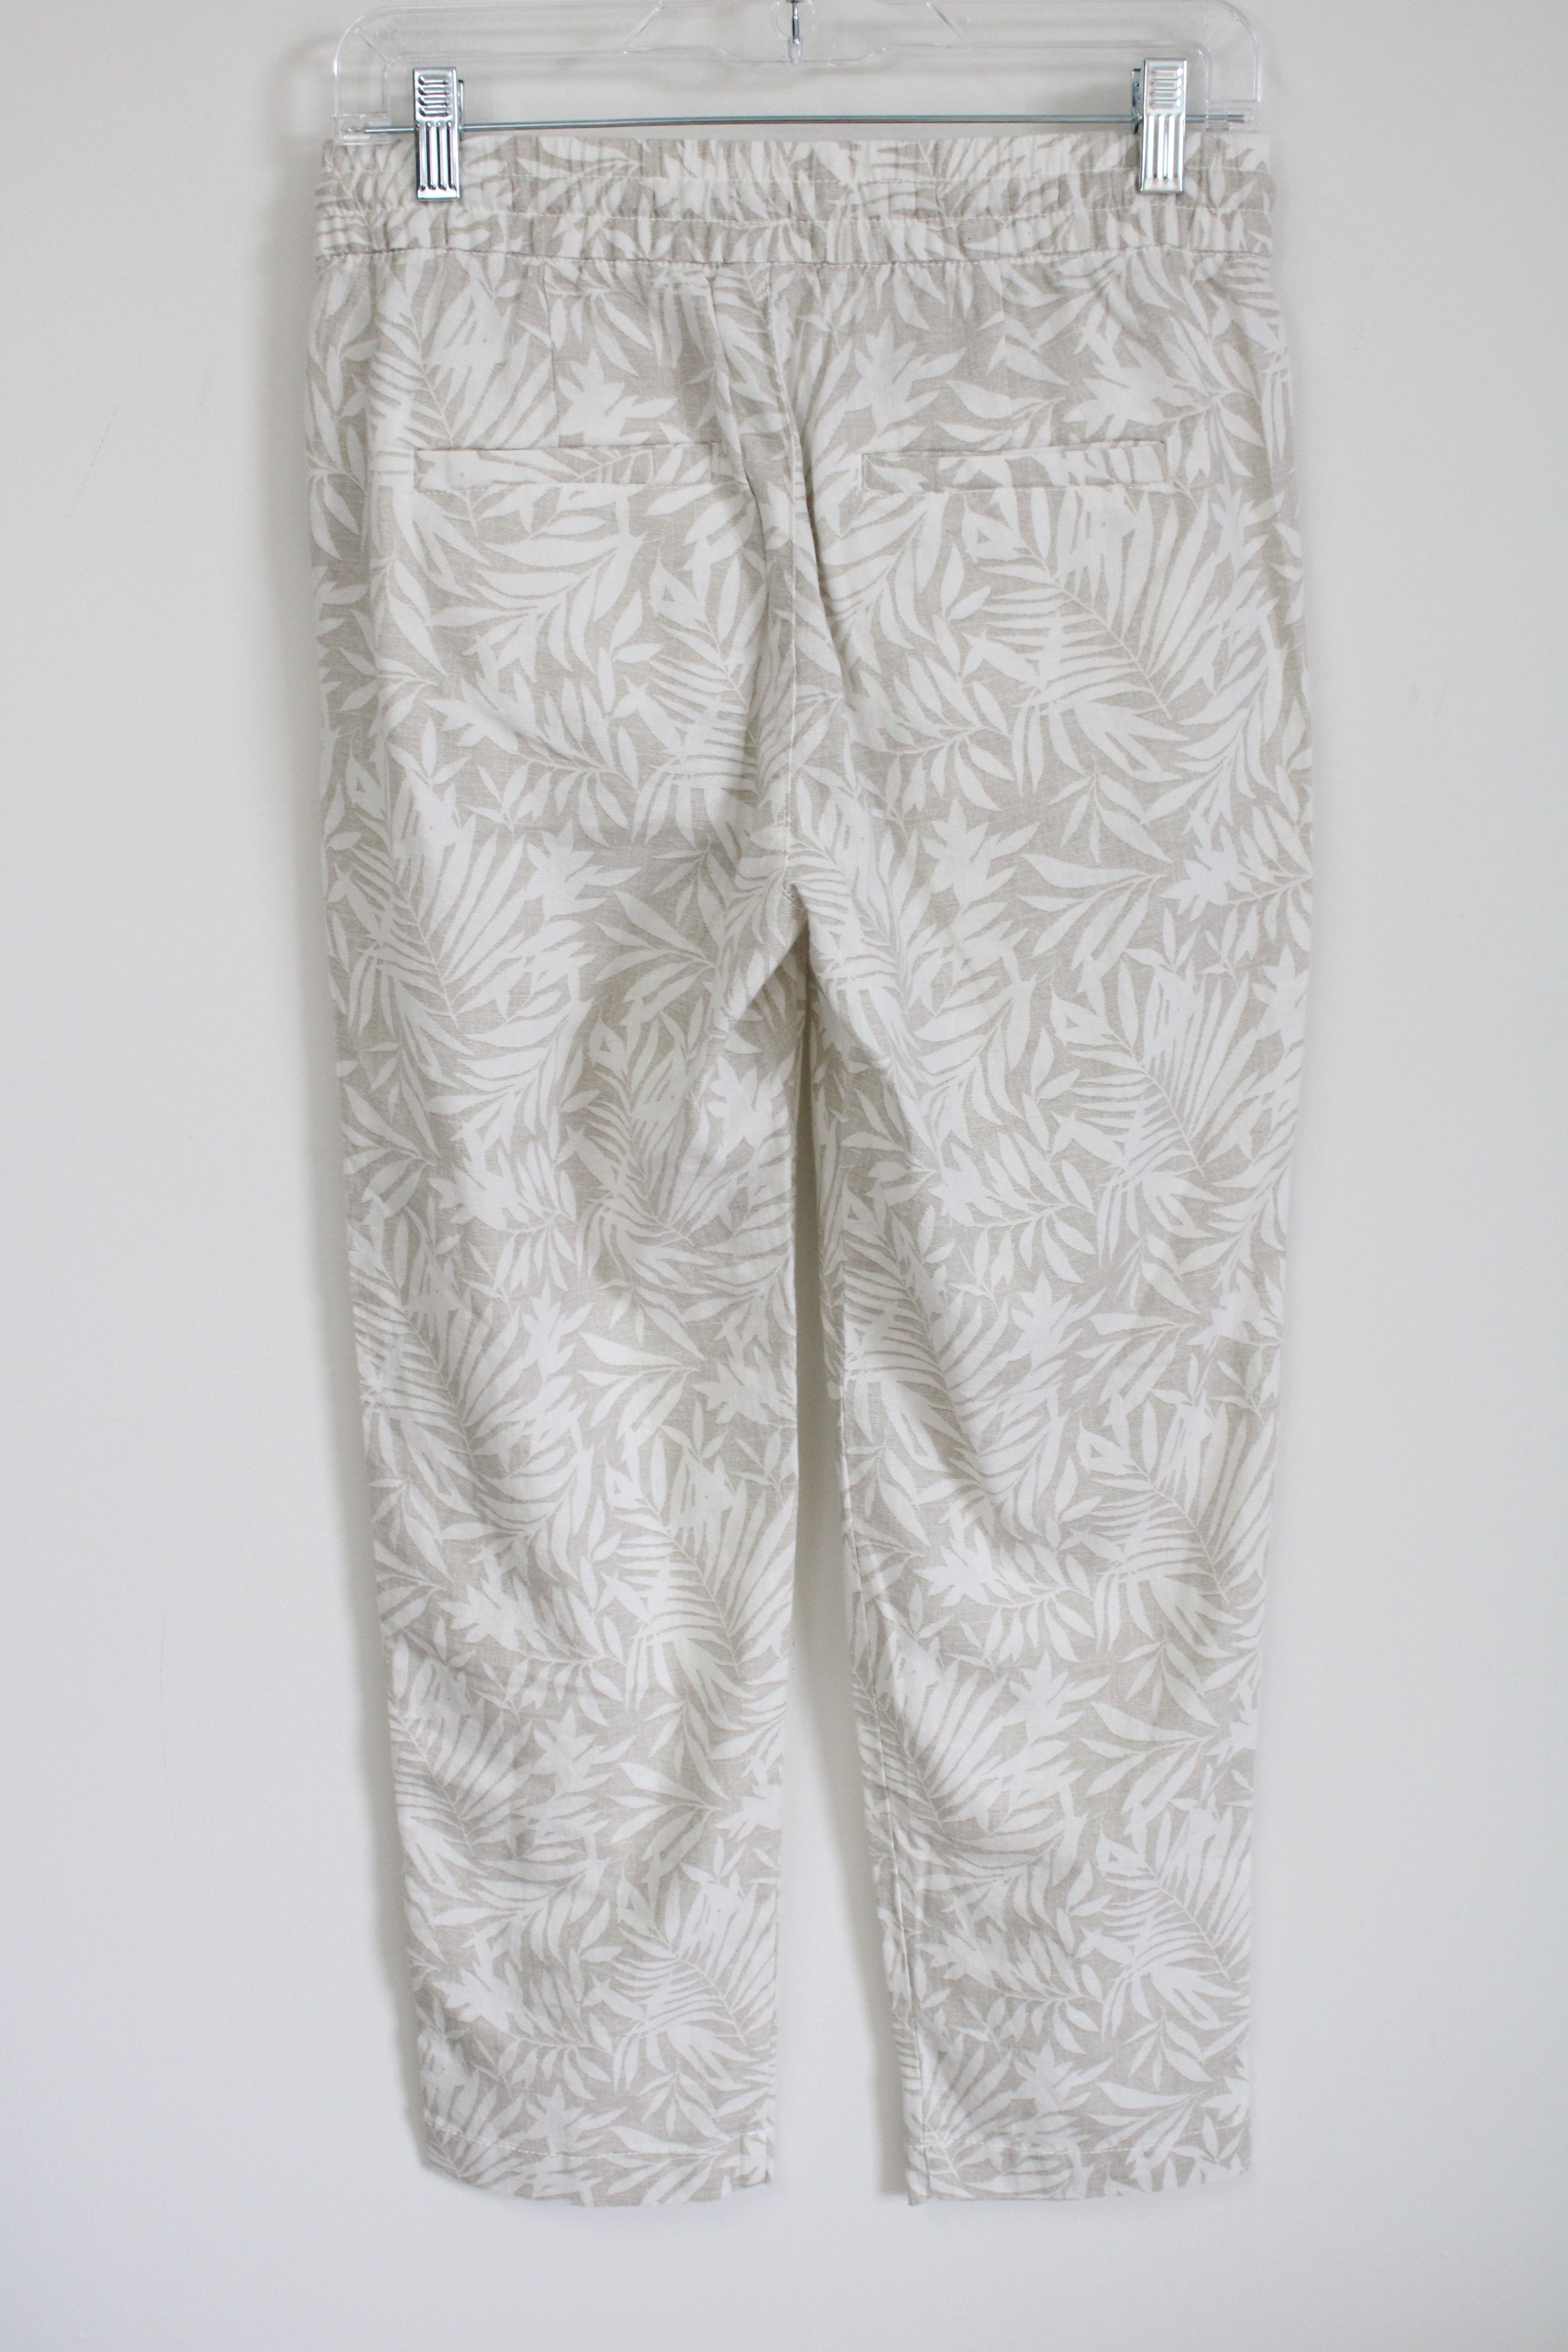 Gap Linen Blend Tan White Tropical Print Easy Pant | XS